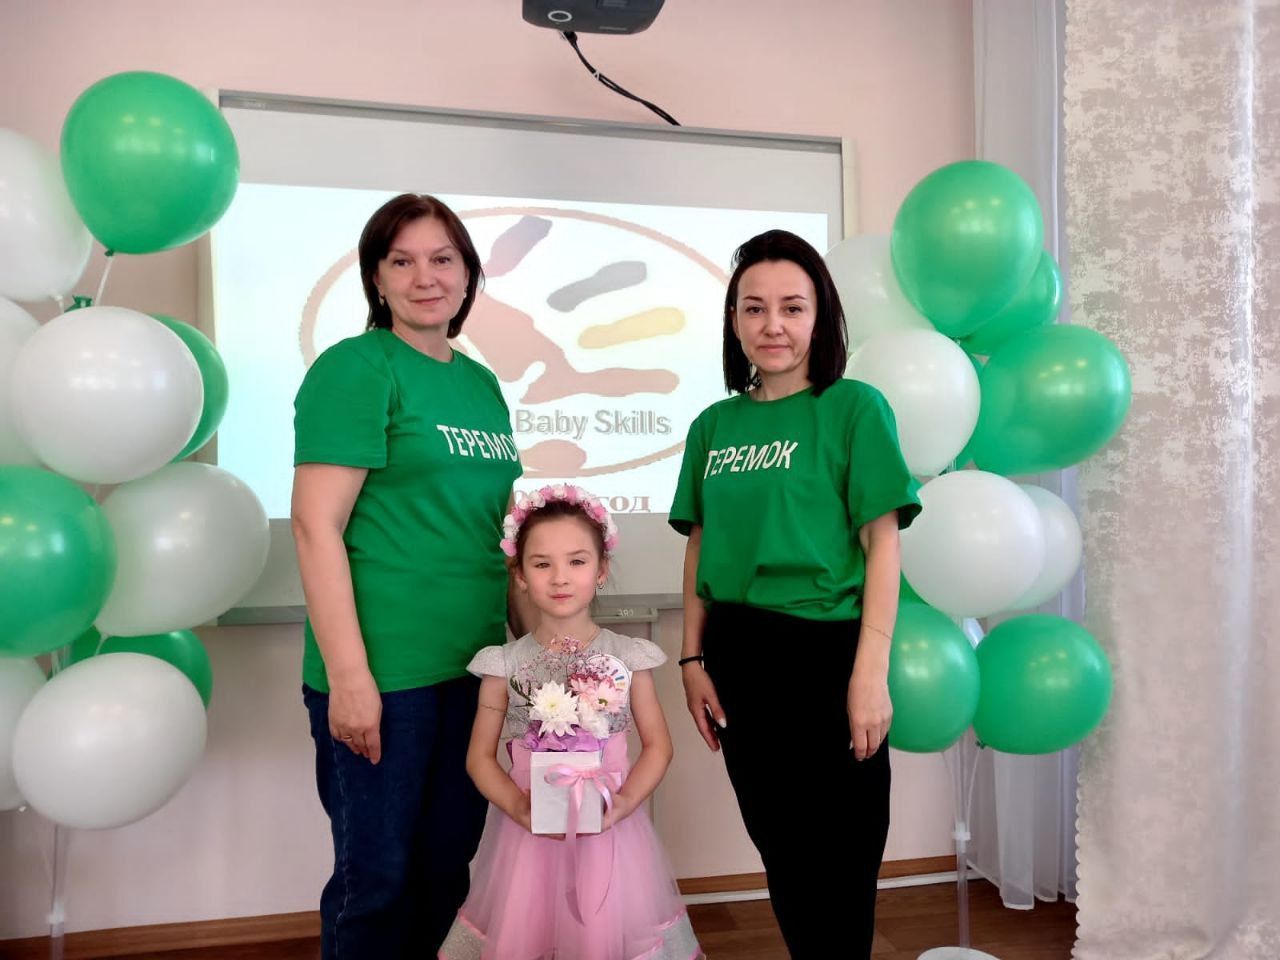 Дошкольница из Нурлата стала победителем регионального этапа Чемпионата Baby Skills